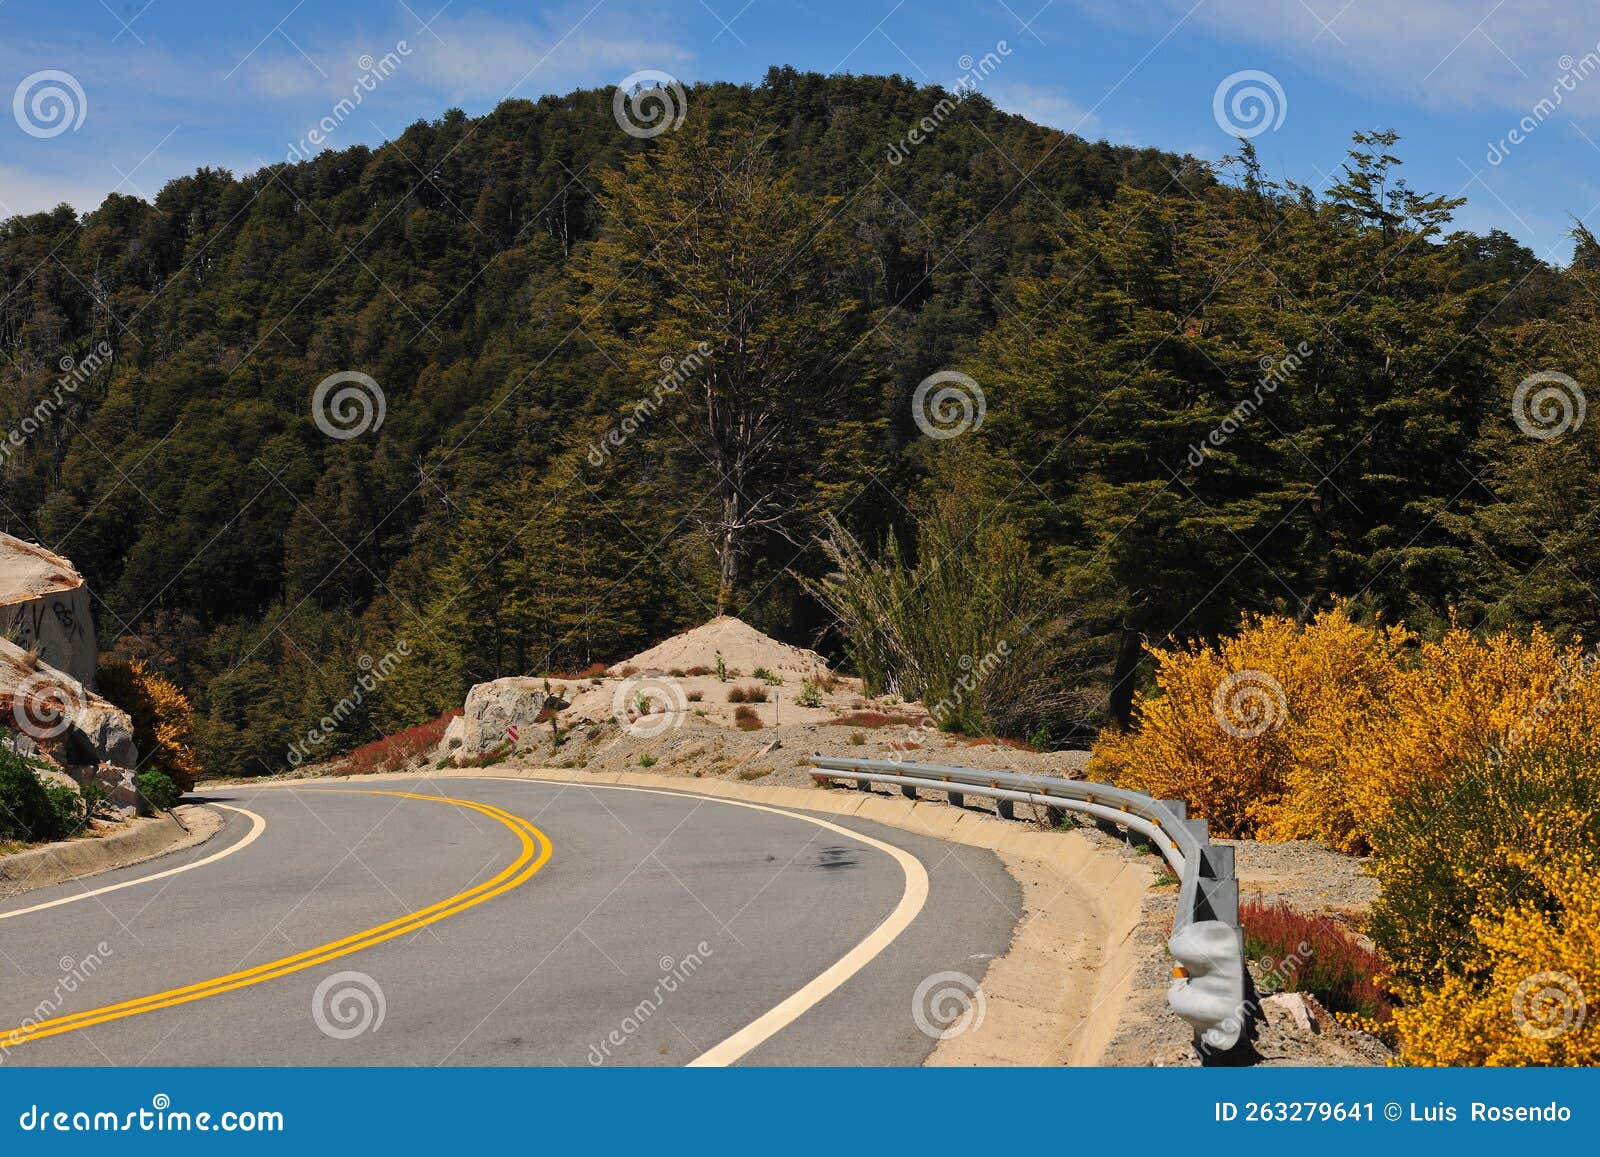 route asphalt curve picturesque and exotic landscapes mountains